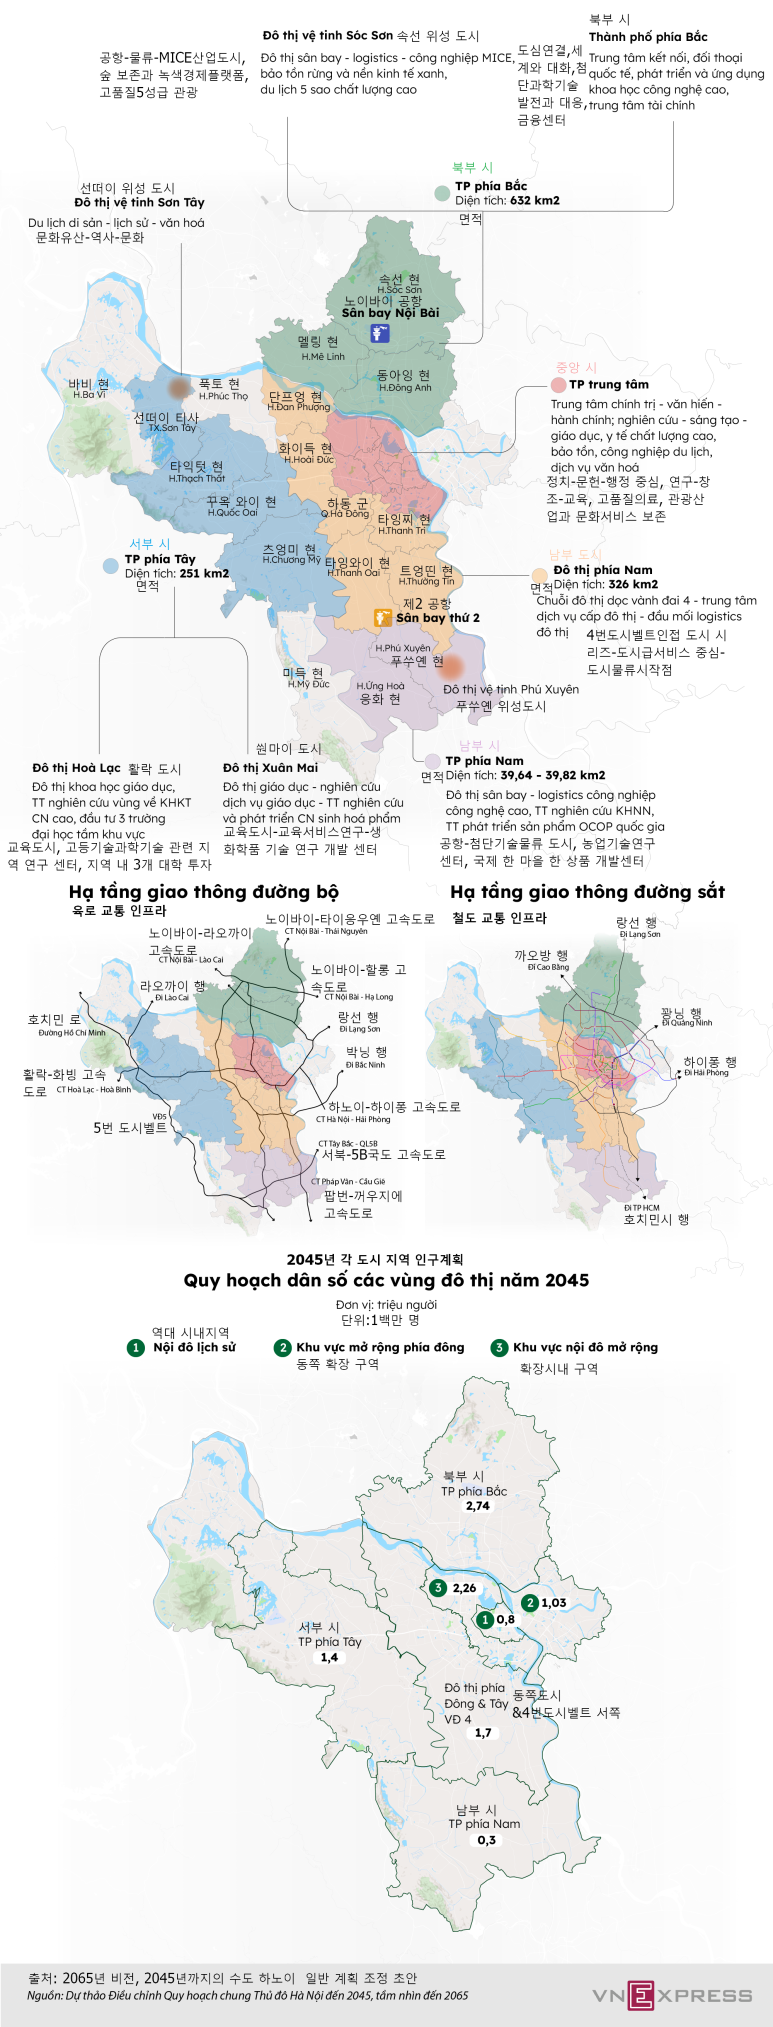 하노이의 2065년 비전, 2045년까지의 일반 계획 조정 초안